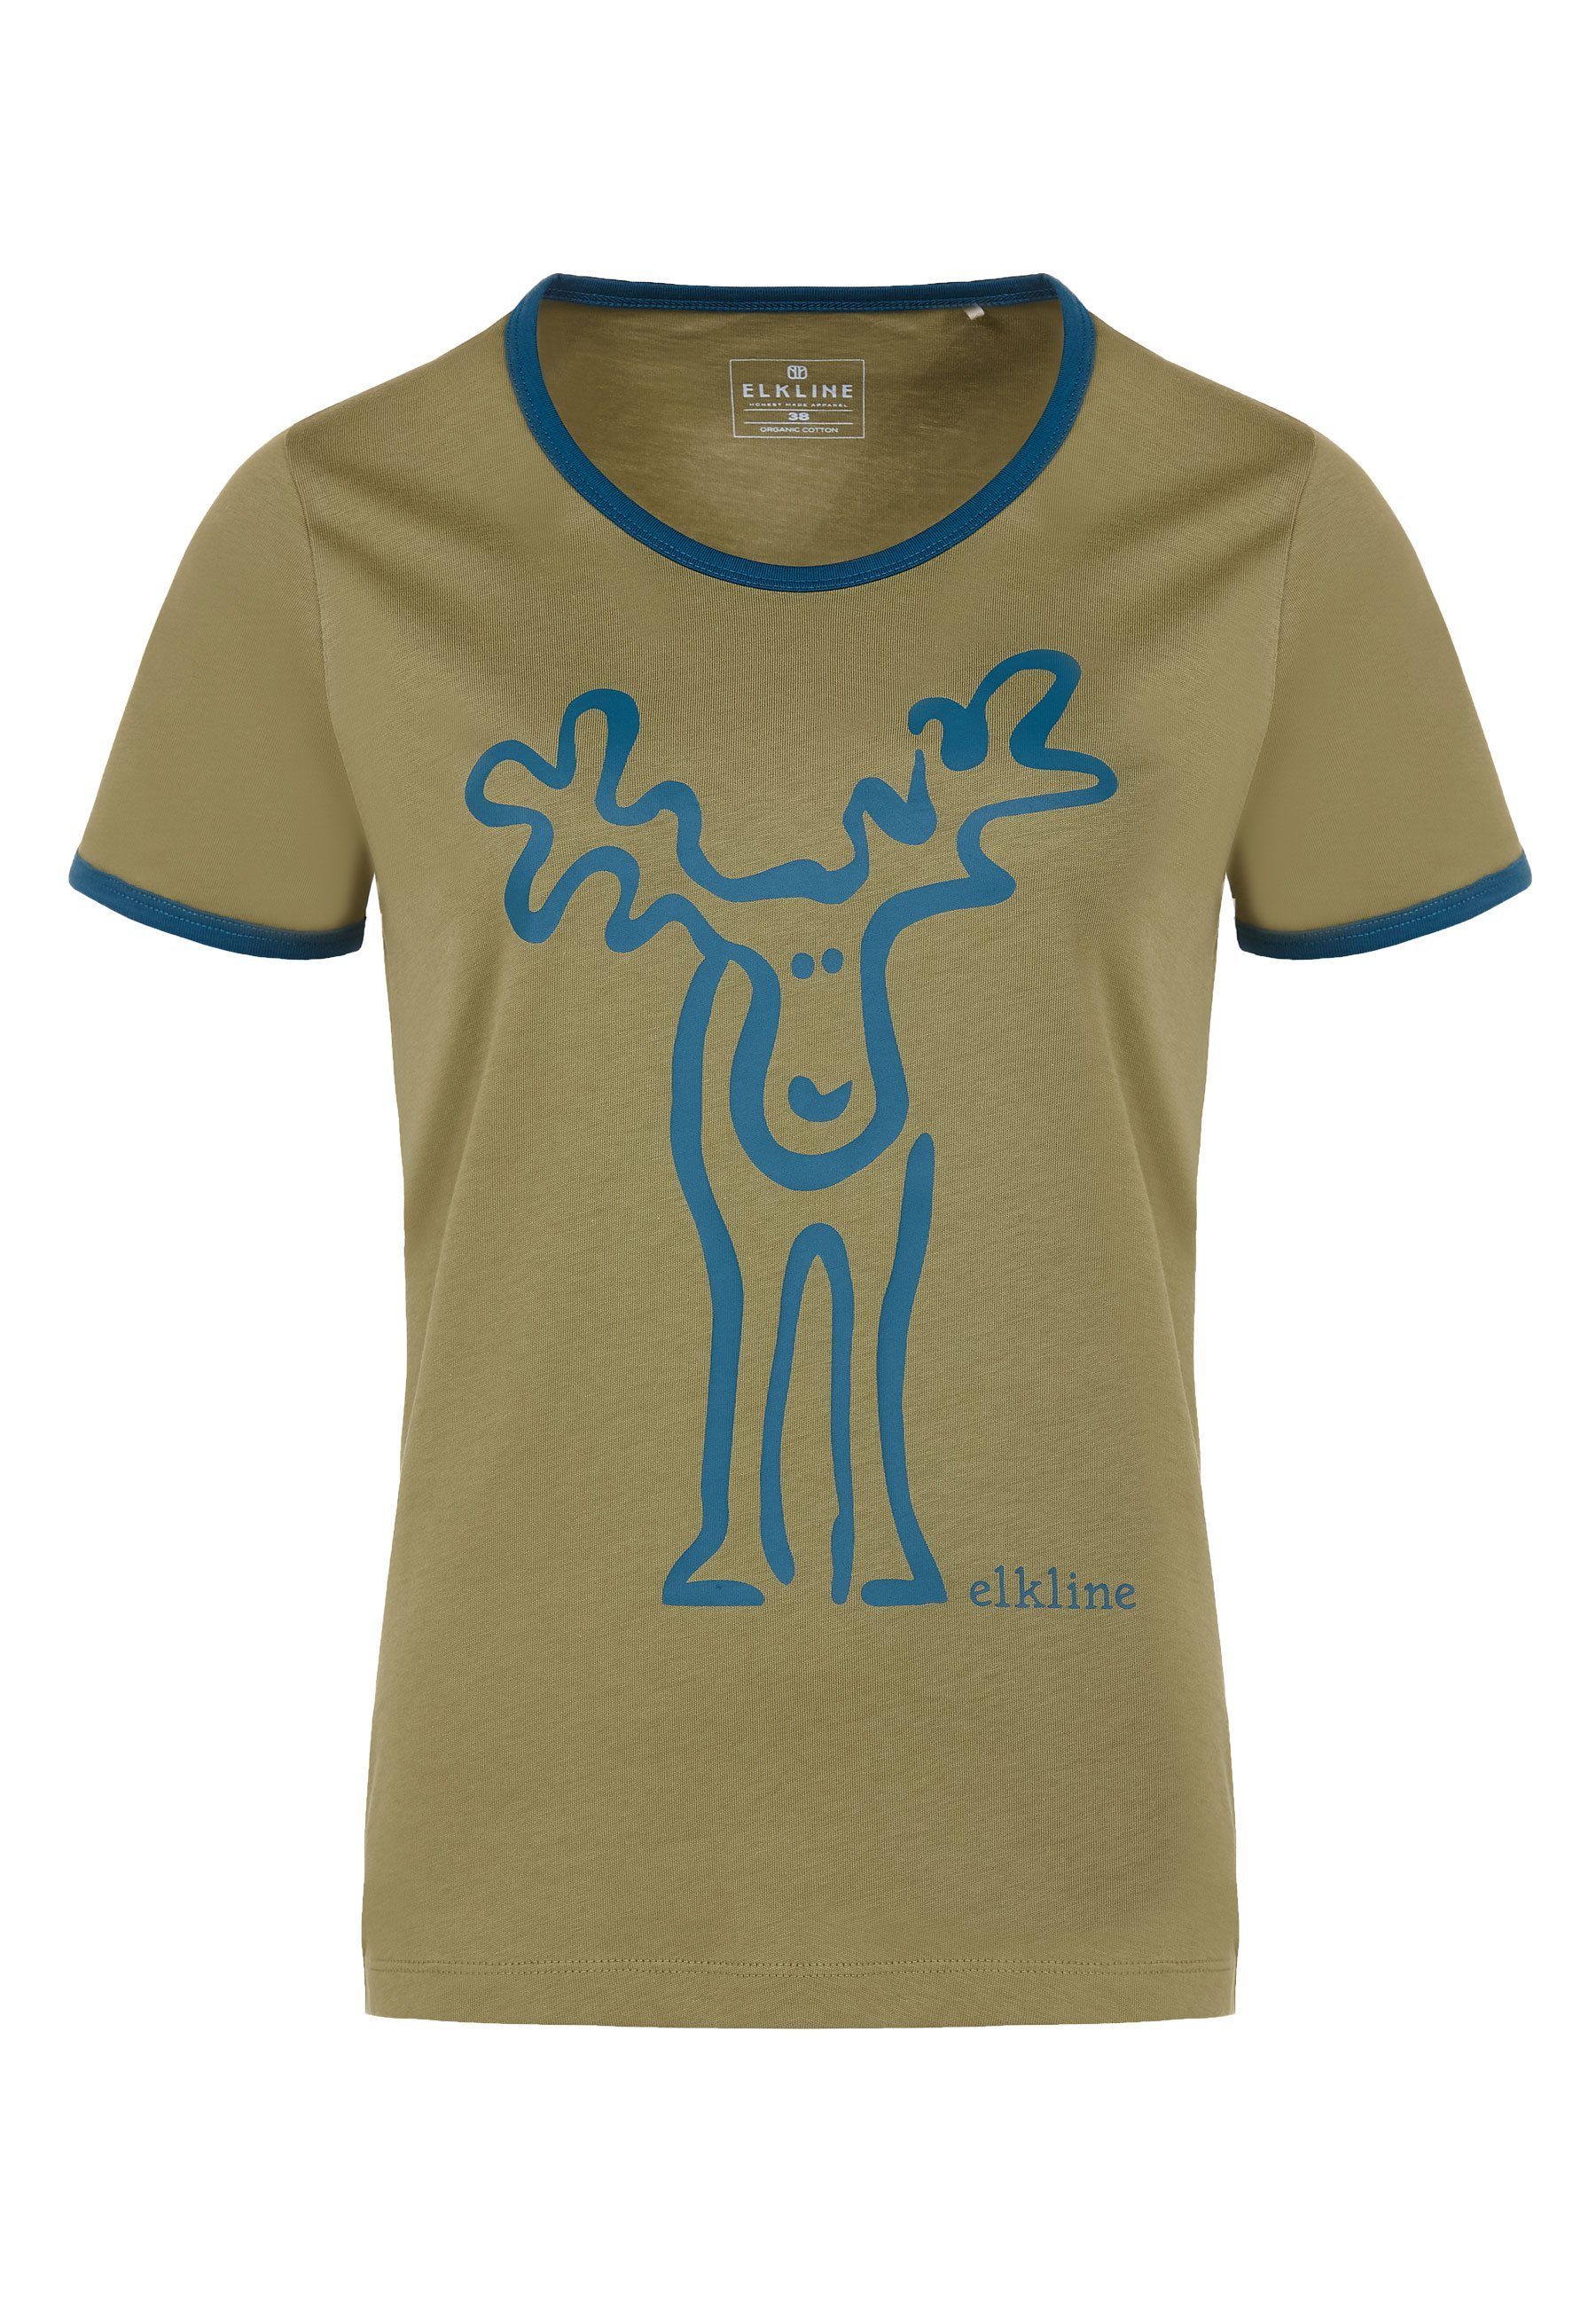 Elkline T-Shirt Rudolfine Retro Elch Brust und Rücken Print avocado - blue coral